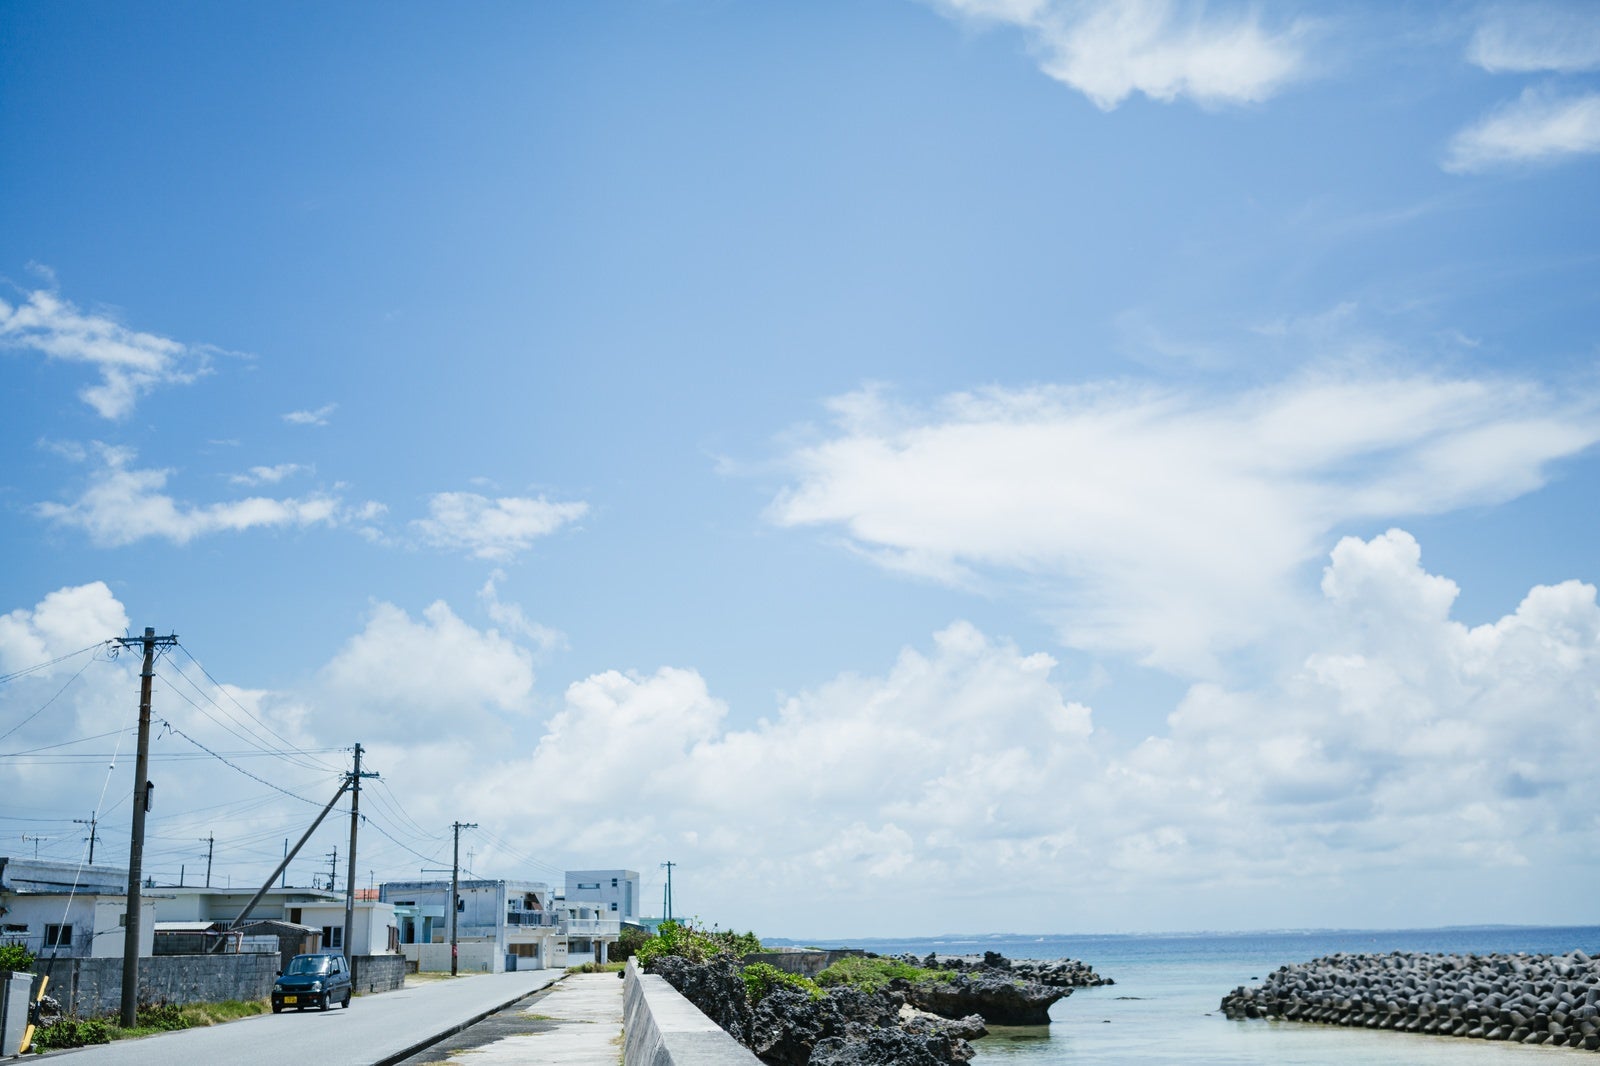 「堤防脇の電柱が並ぶ風景」の写真